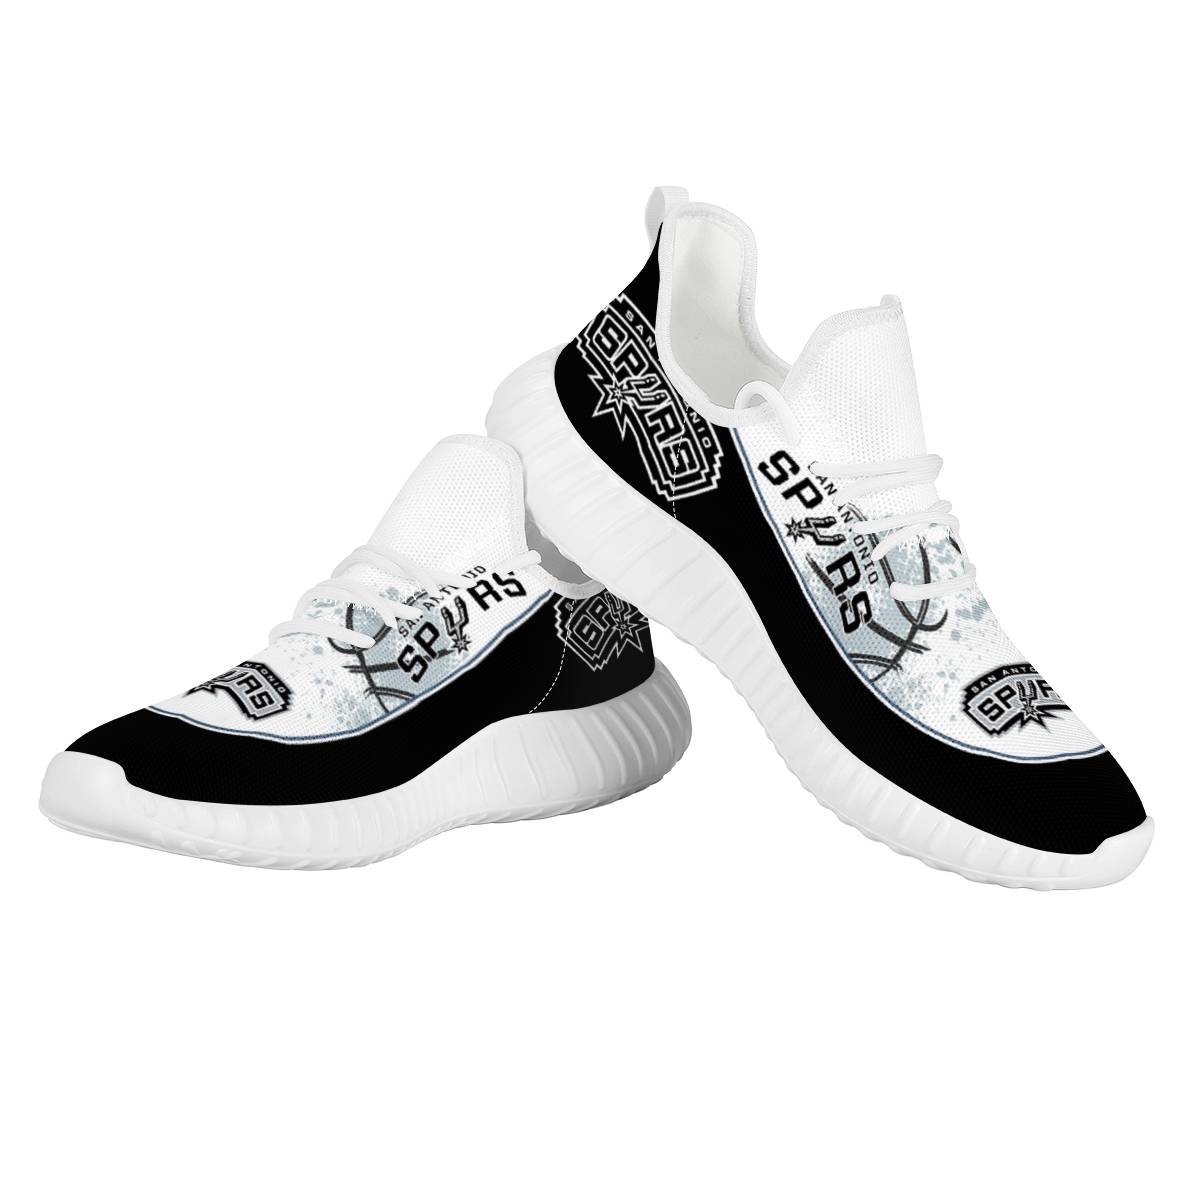 Men's San Antonio Spurs Mesh Knit Sneakers/Shoes 002